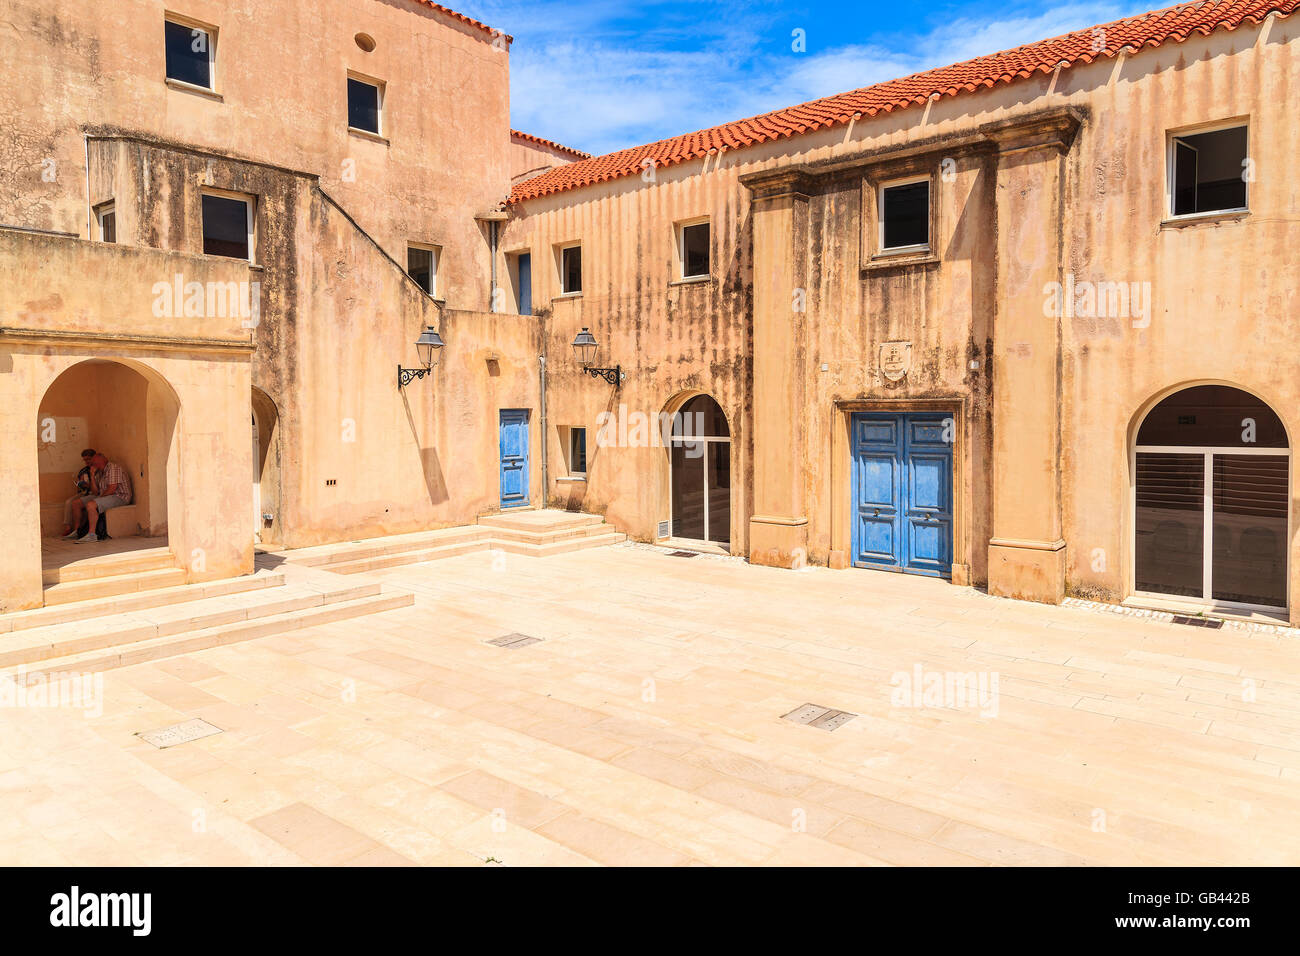 Città di Bonifacio, Corsica - giu 23, 2015: la piazza della città vecchia con le case nella città di Bonifacio, una popolare destinazione turistica sul cor Foto Stock